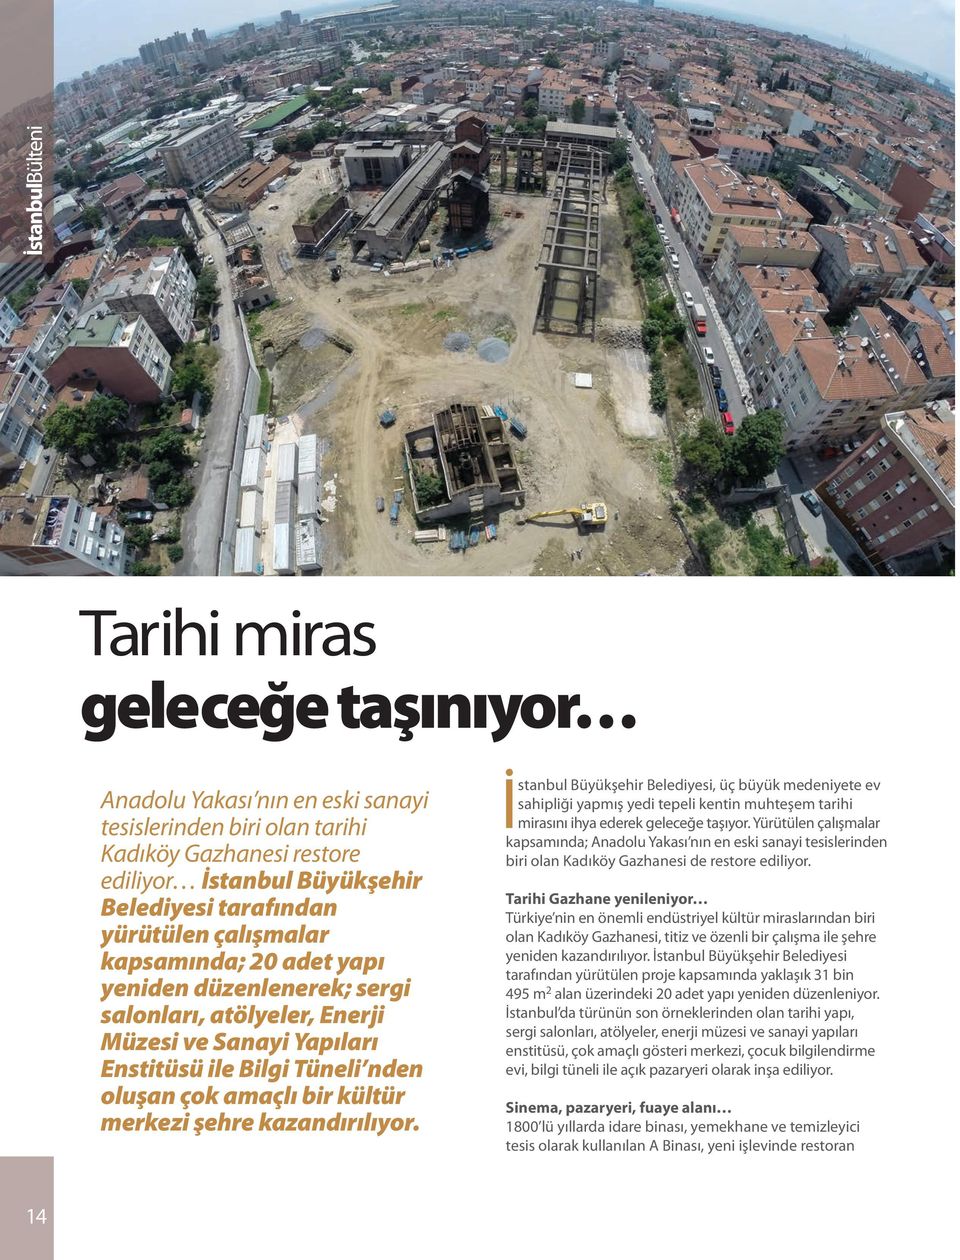 İstanbul Büyükşehir Belediyesi, üç büyük medeniyete ev sahipliği yapmış yedi tepeli kentin muhteşem tarihi mirasını ihya ederek geleceğe taşıyor.